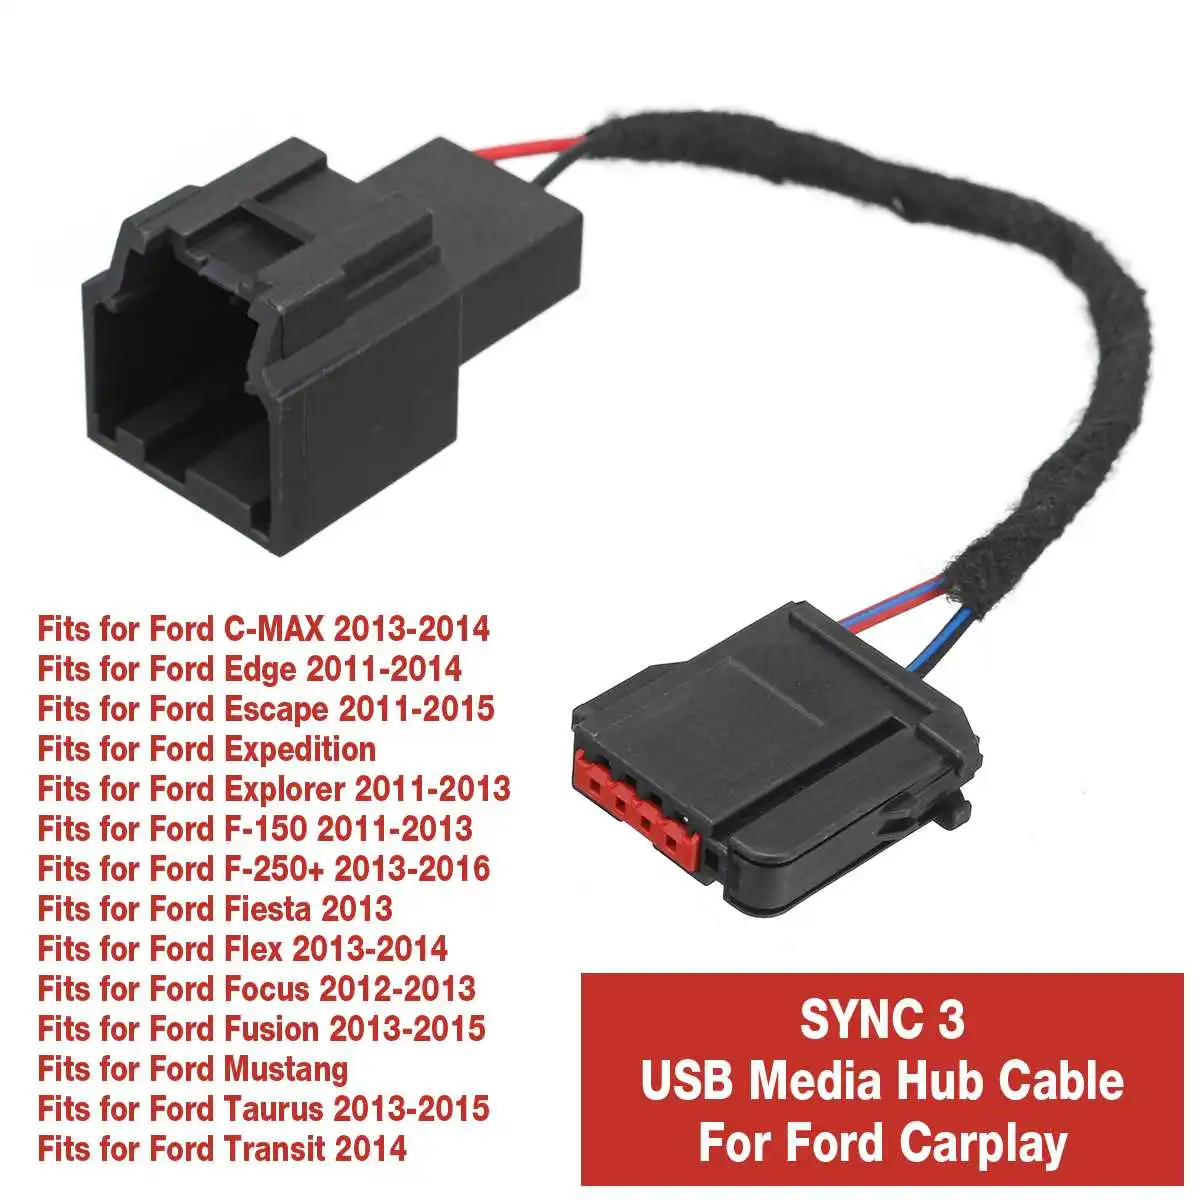 Автомобильная синхронизация 3 модифицированный USB медиахаб адаптер для проводки(для GEN 1) для Ford Carplay